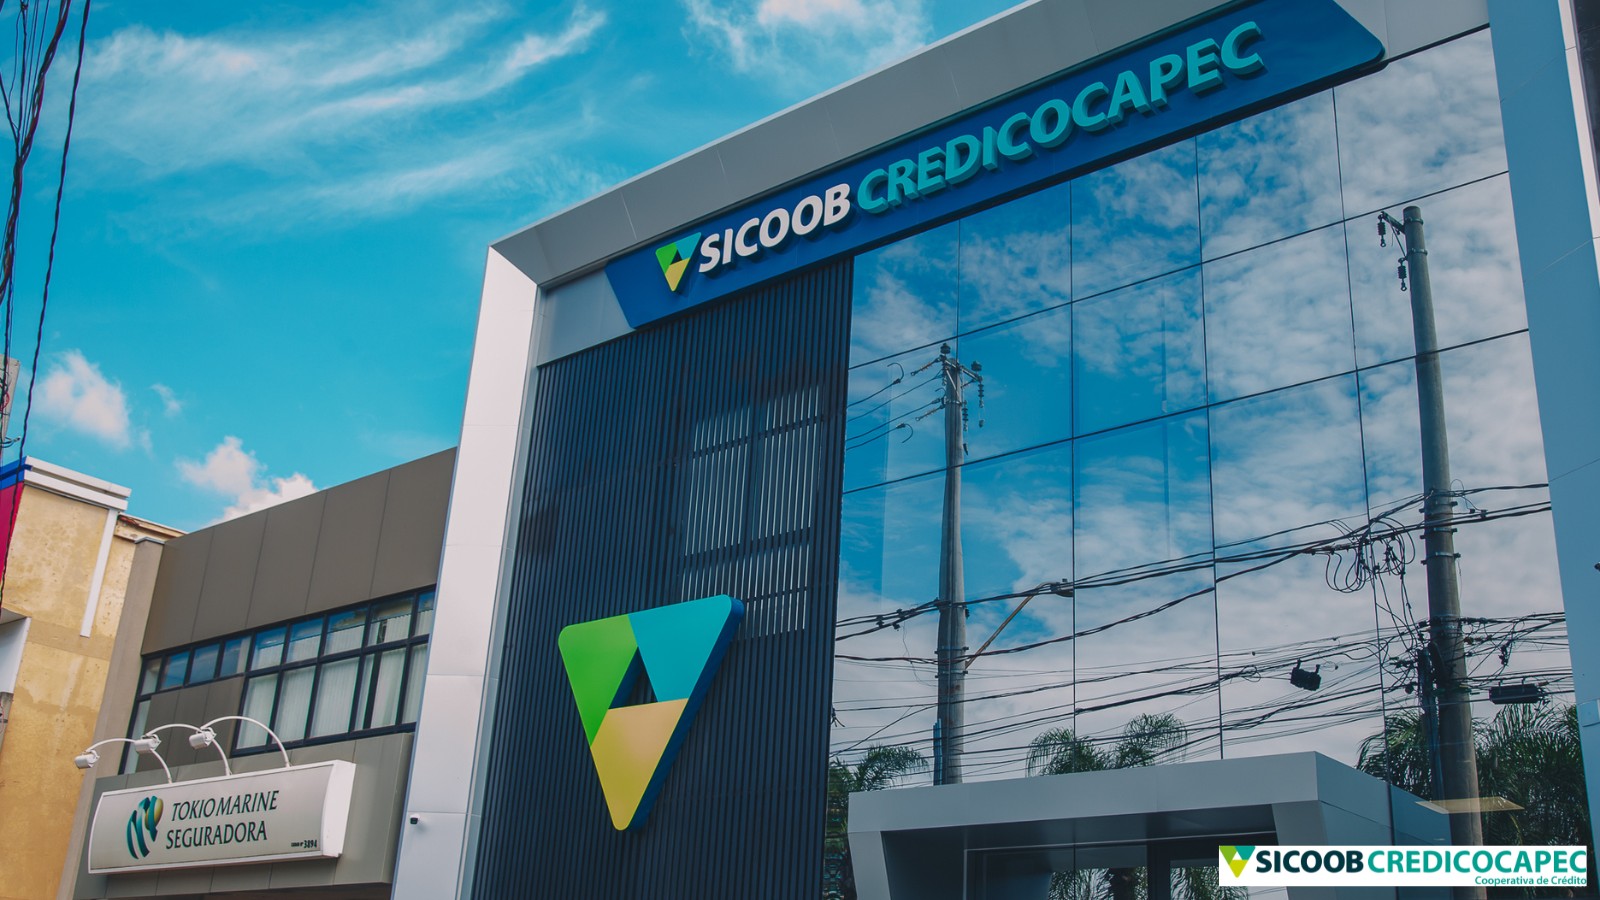 Sicoob Credicocapec marca o cooperativismo de Ribeirão Preto